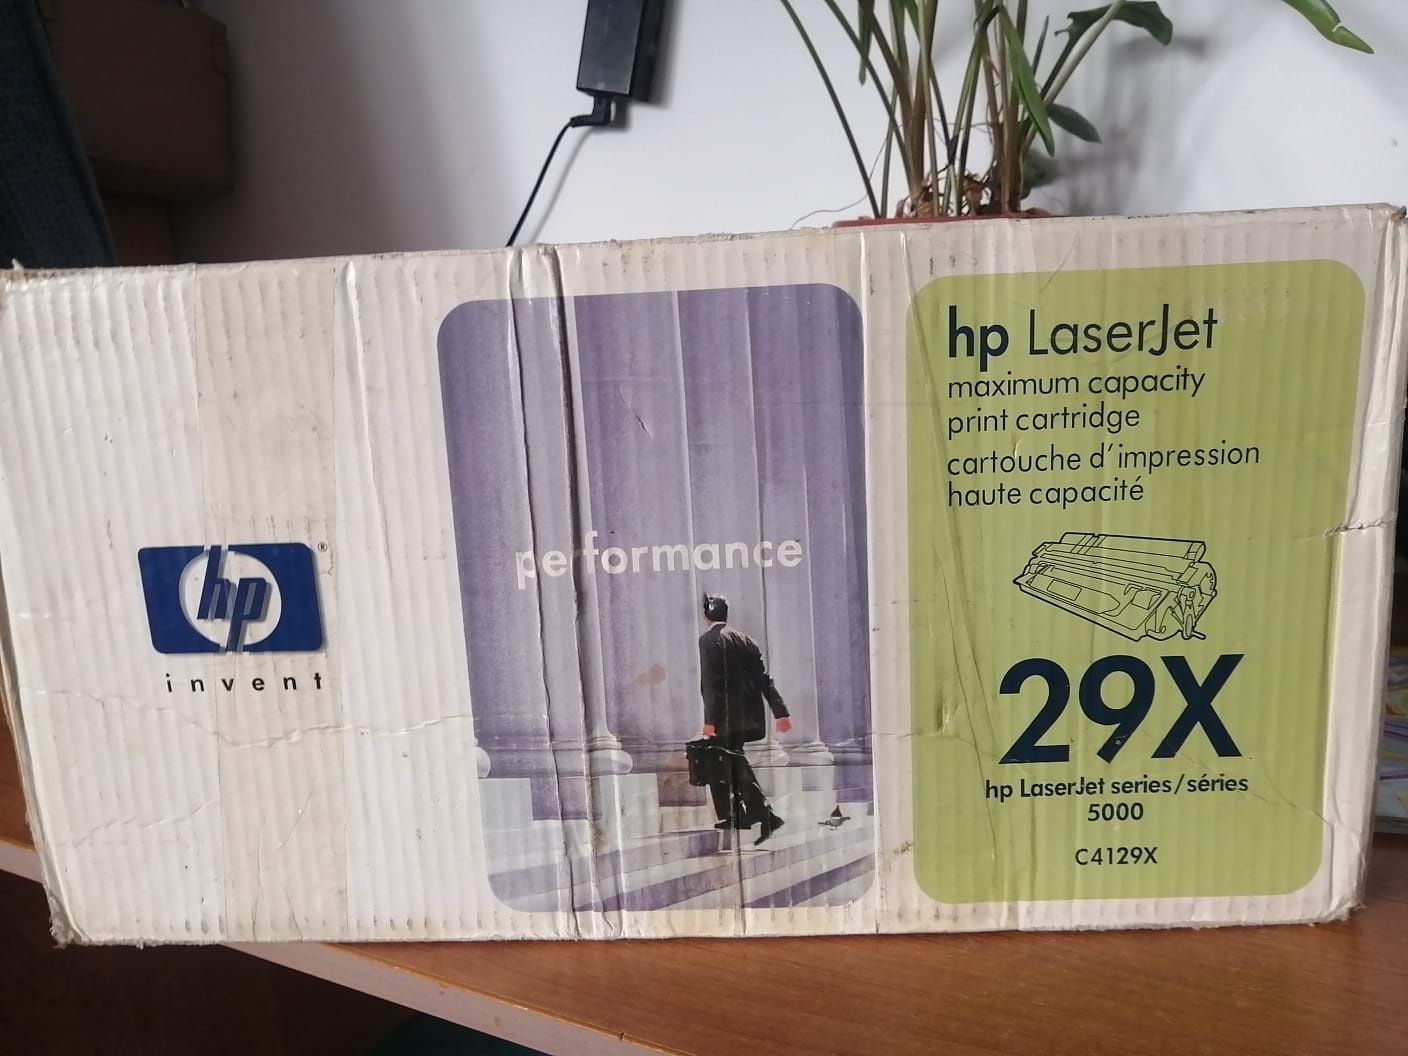 Картридж в коробке, HP 29X самый дорогой